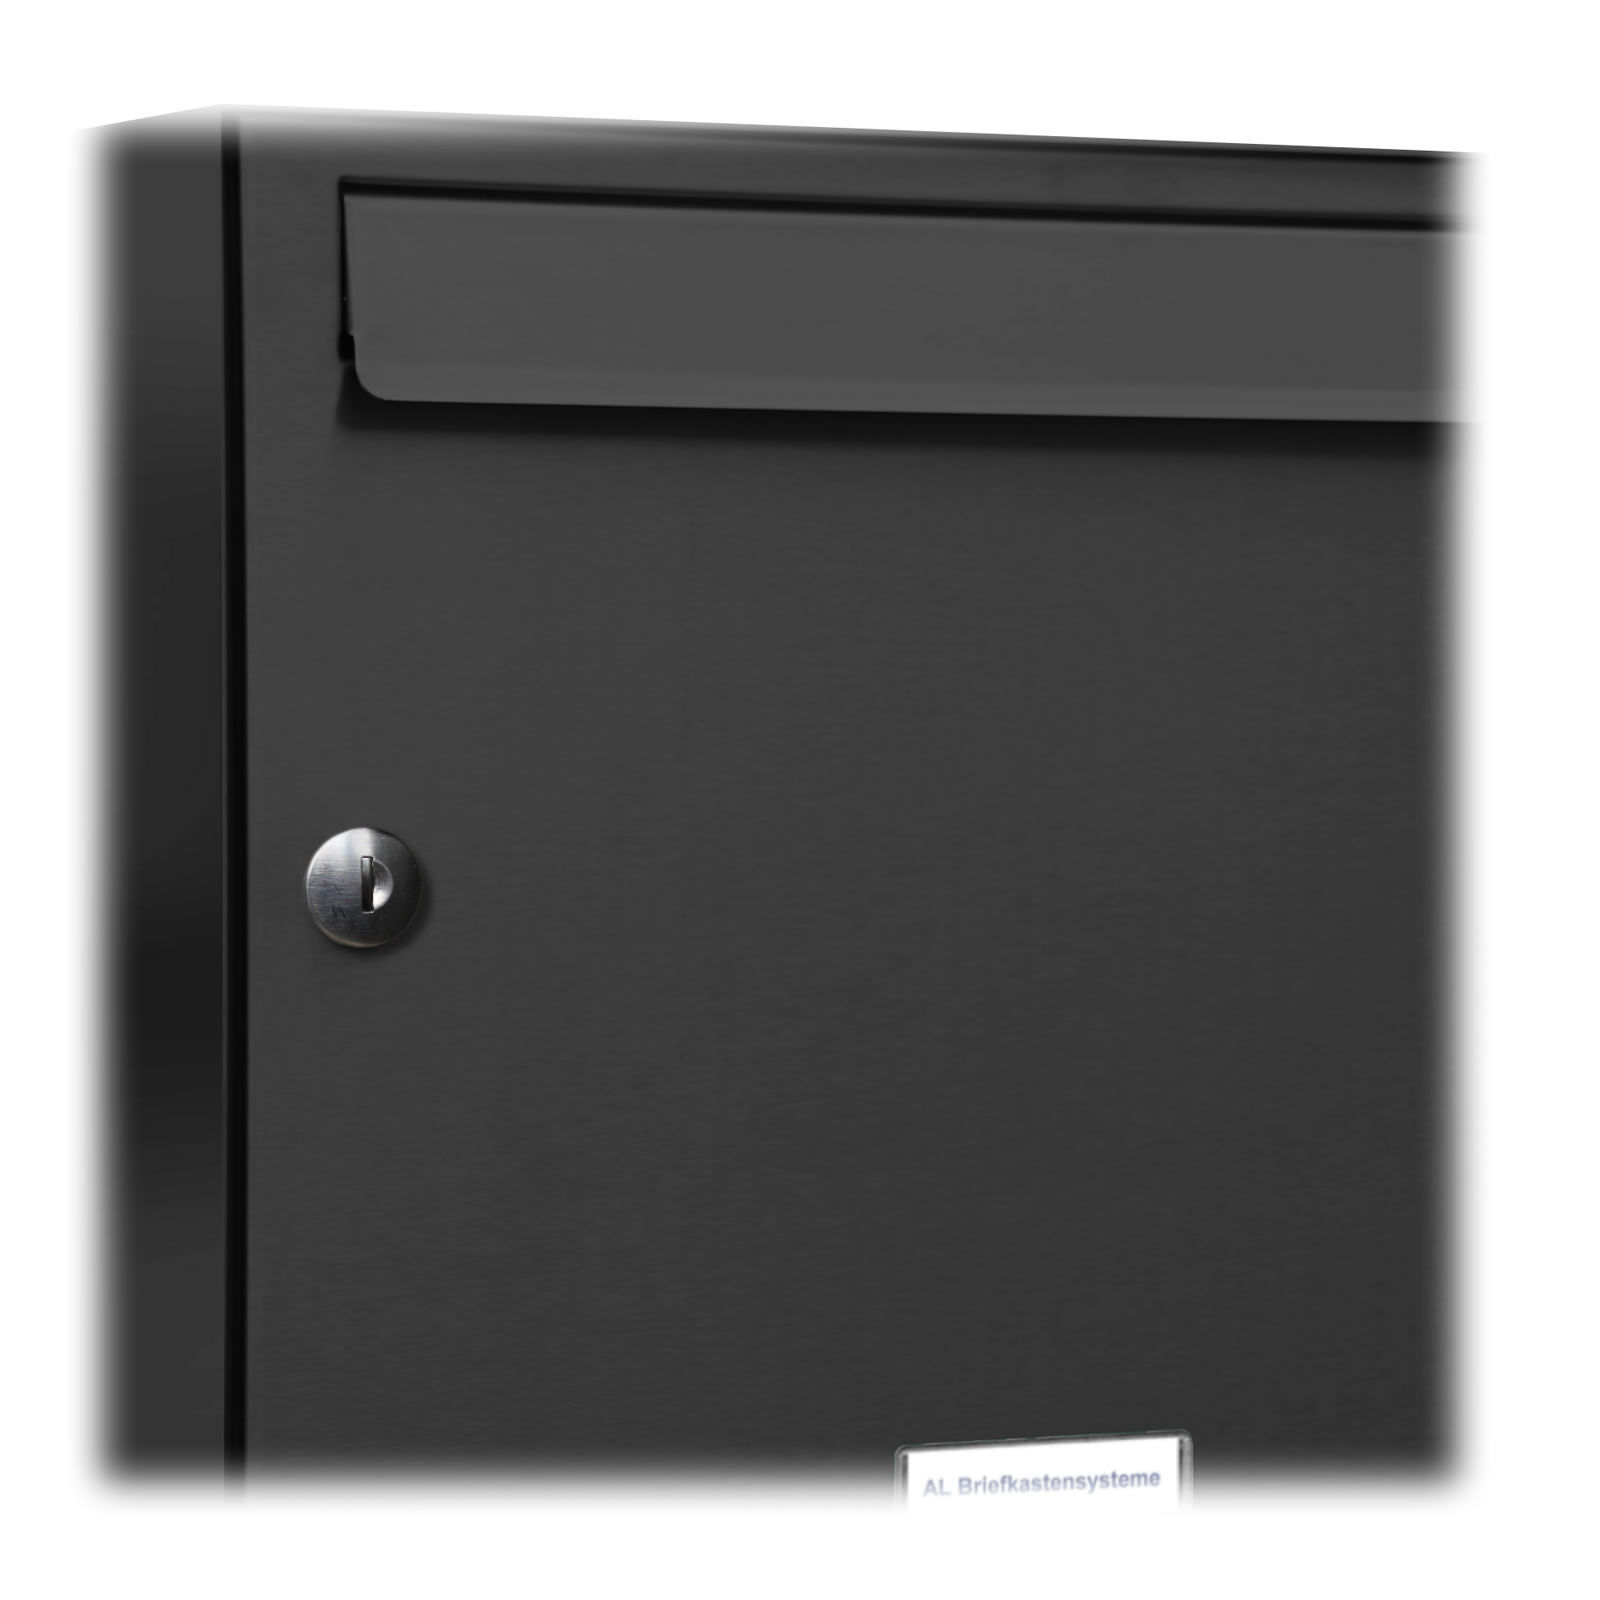 4er Premium Briefkasten Anthrazit RAL Farbe 7016 für Außen Wand Postkasten 2x2 S Gratis verzending, verkoop